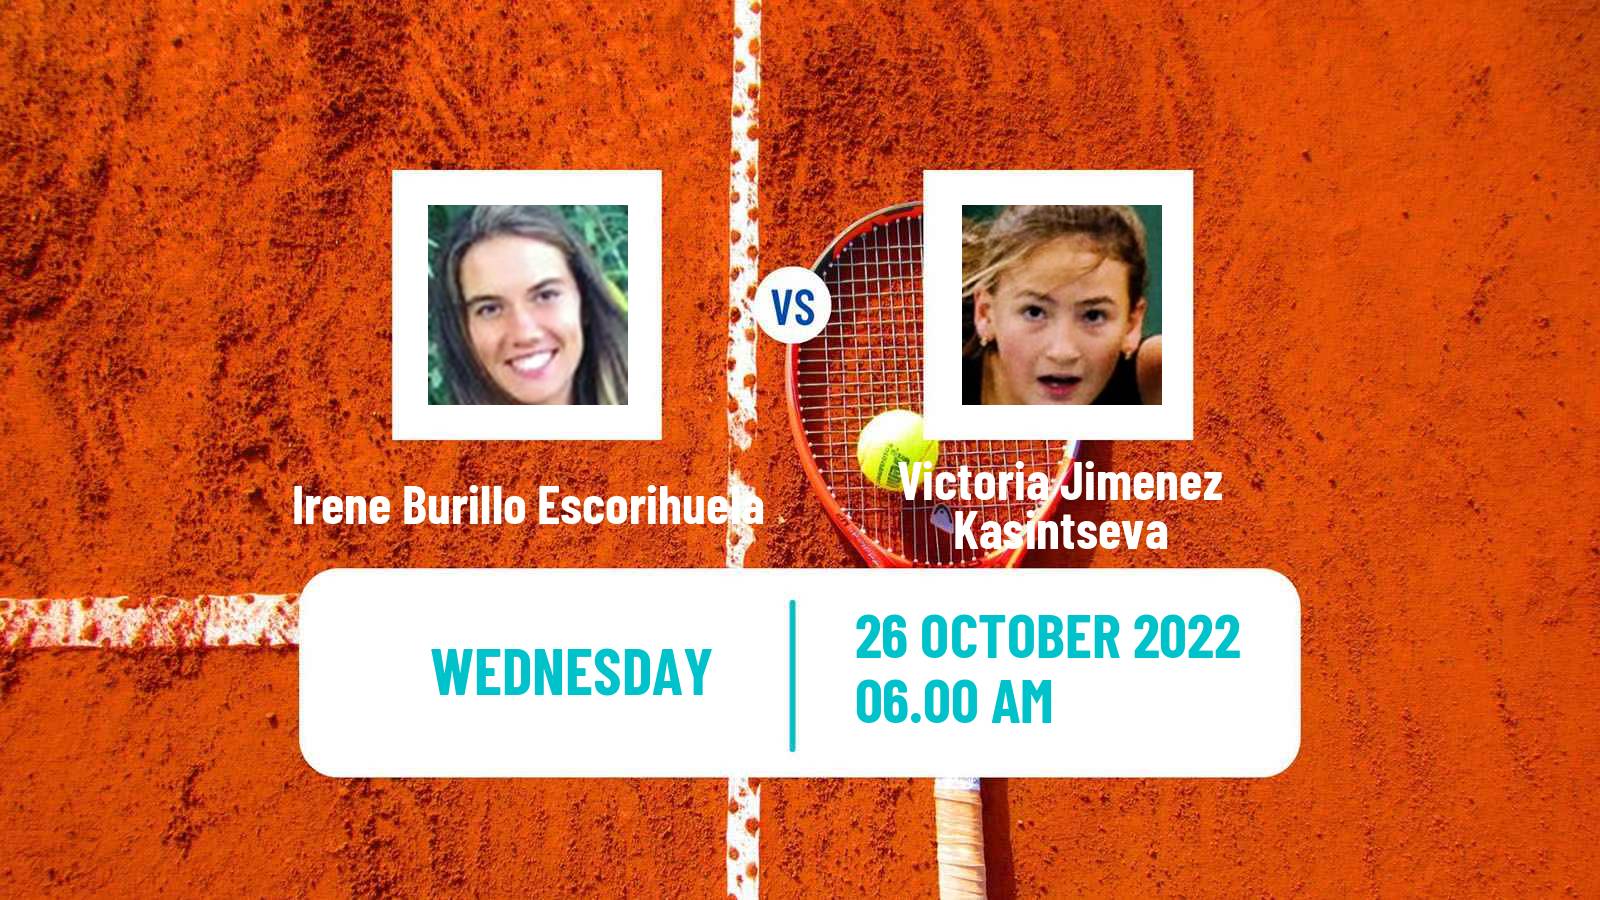 Tennis ITF Tournaments Irene Burillo Escorihuela - Victoria Jimenez Kasintseva